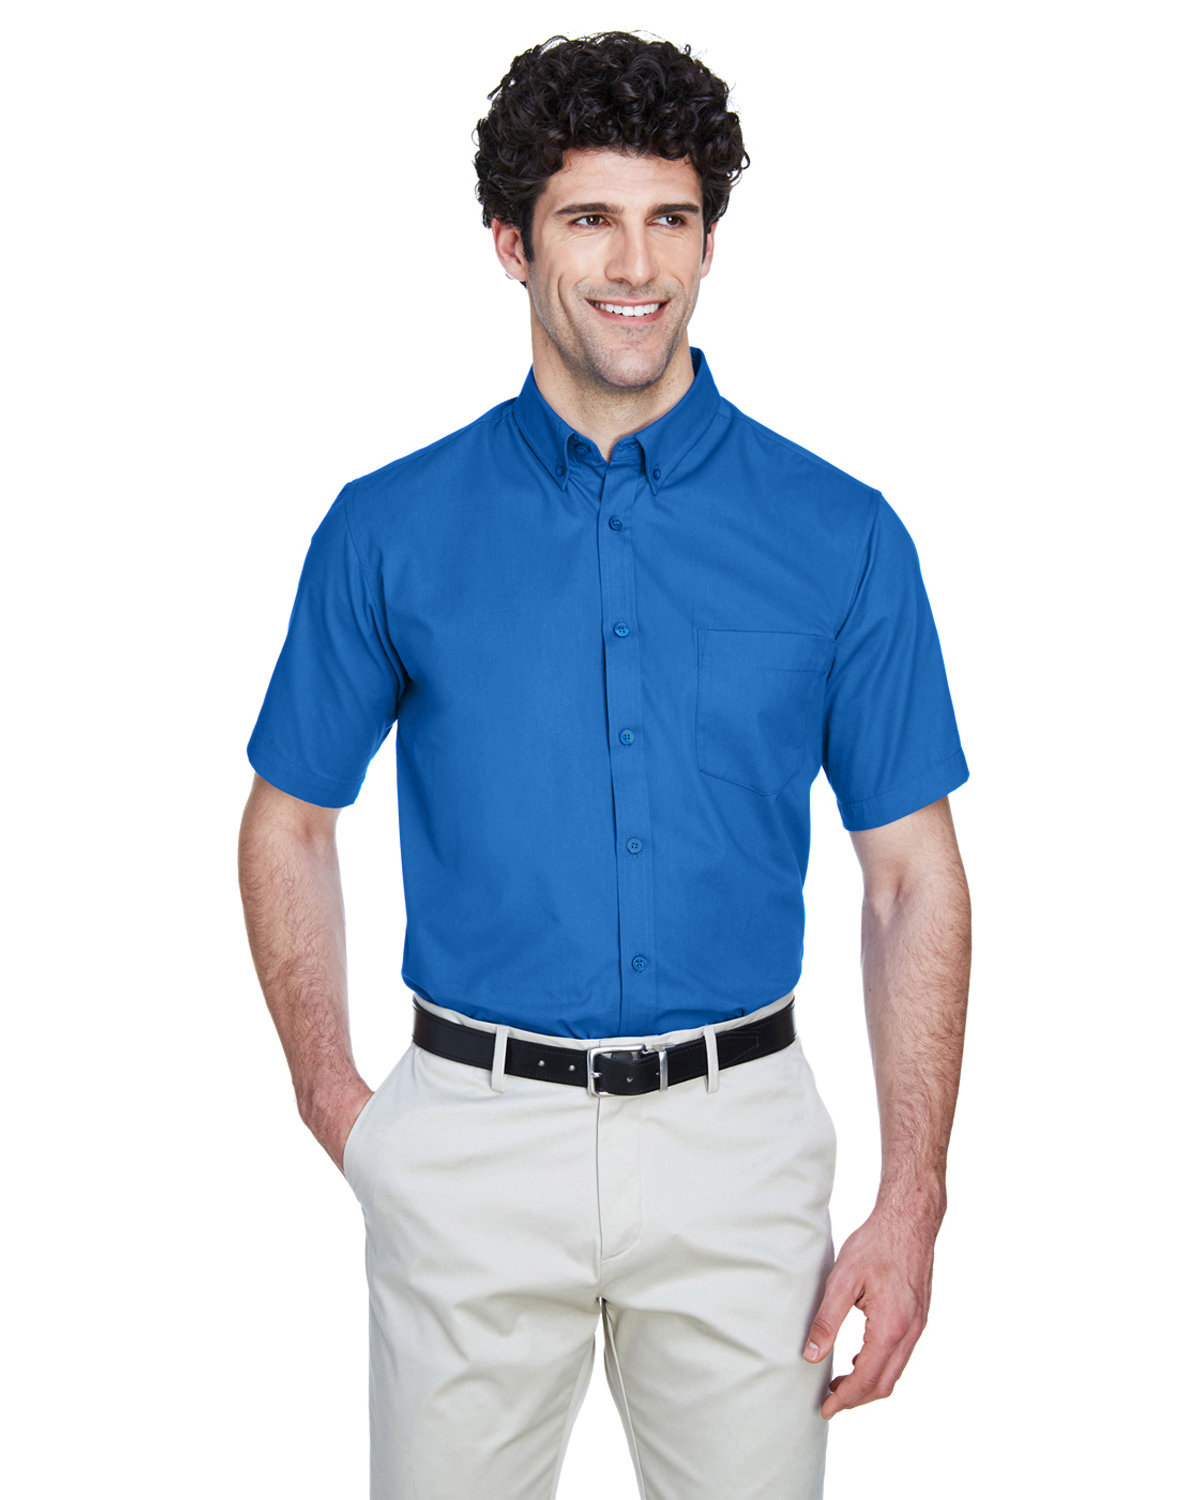 CORE365 Men's Optimum Short-Sleeve Twill Shirt TRUE ROYAL 